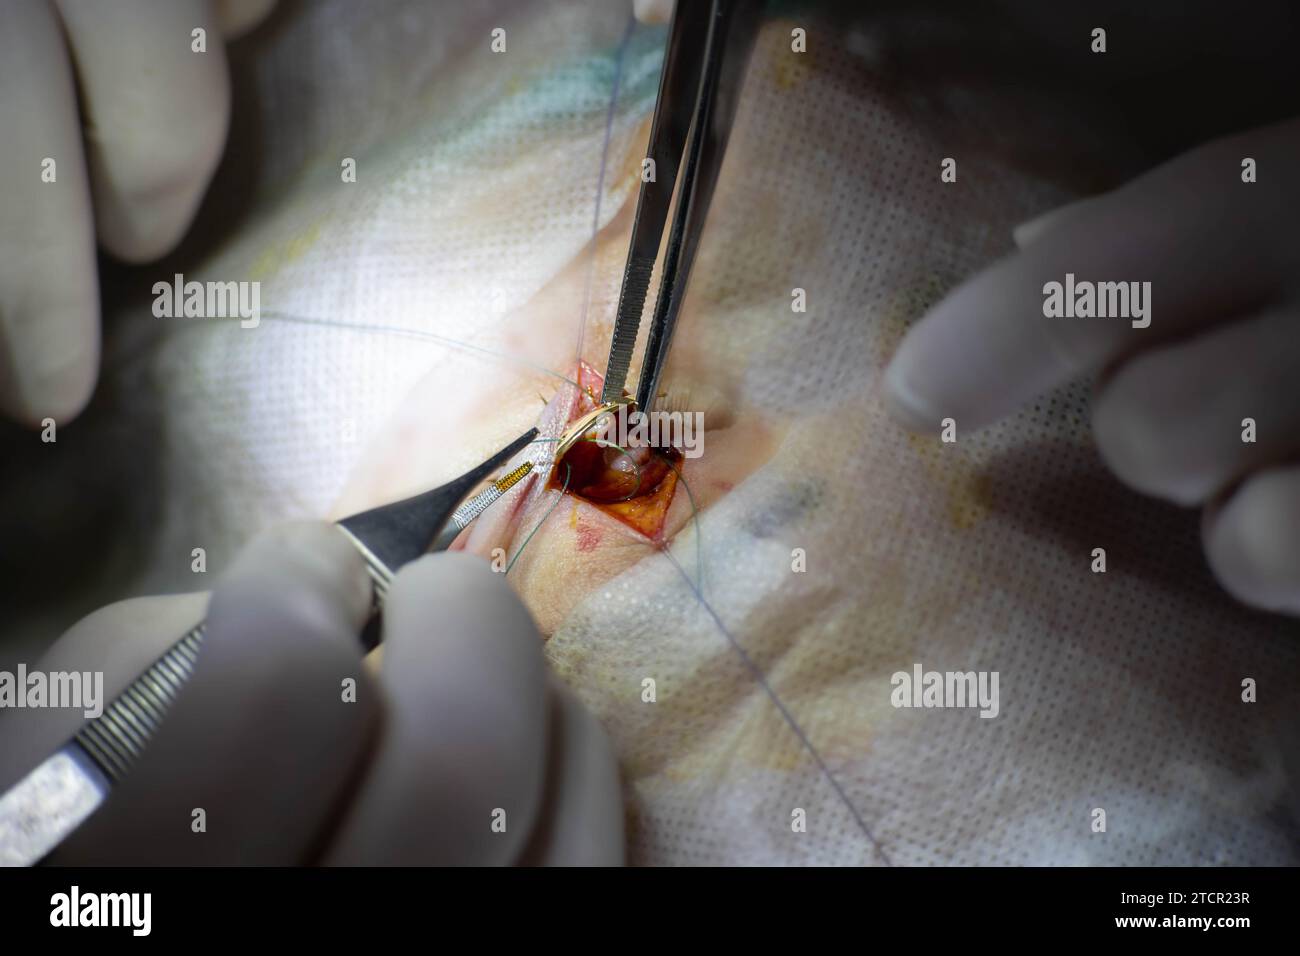 Einzigartige chirurgische Operation bei Neuritis des Nervus facialis, Implantation eines Goldimplantats in die Augenlider, bevor sich das Auge nicht schließt. Goldenes Augenlid Stockfoto